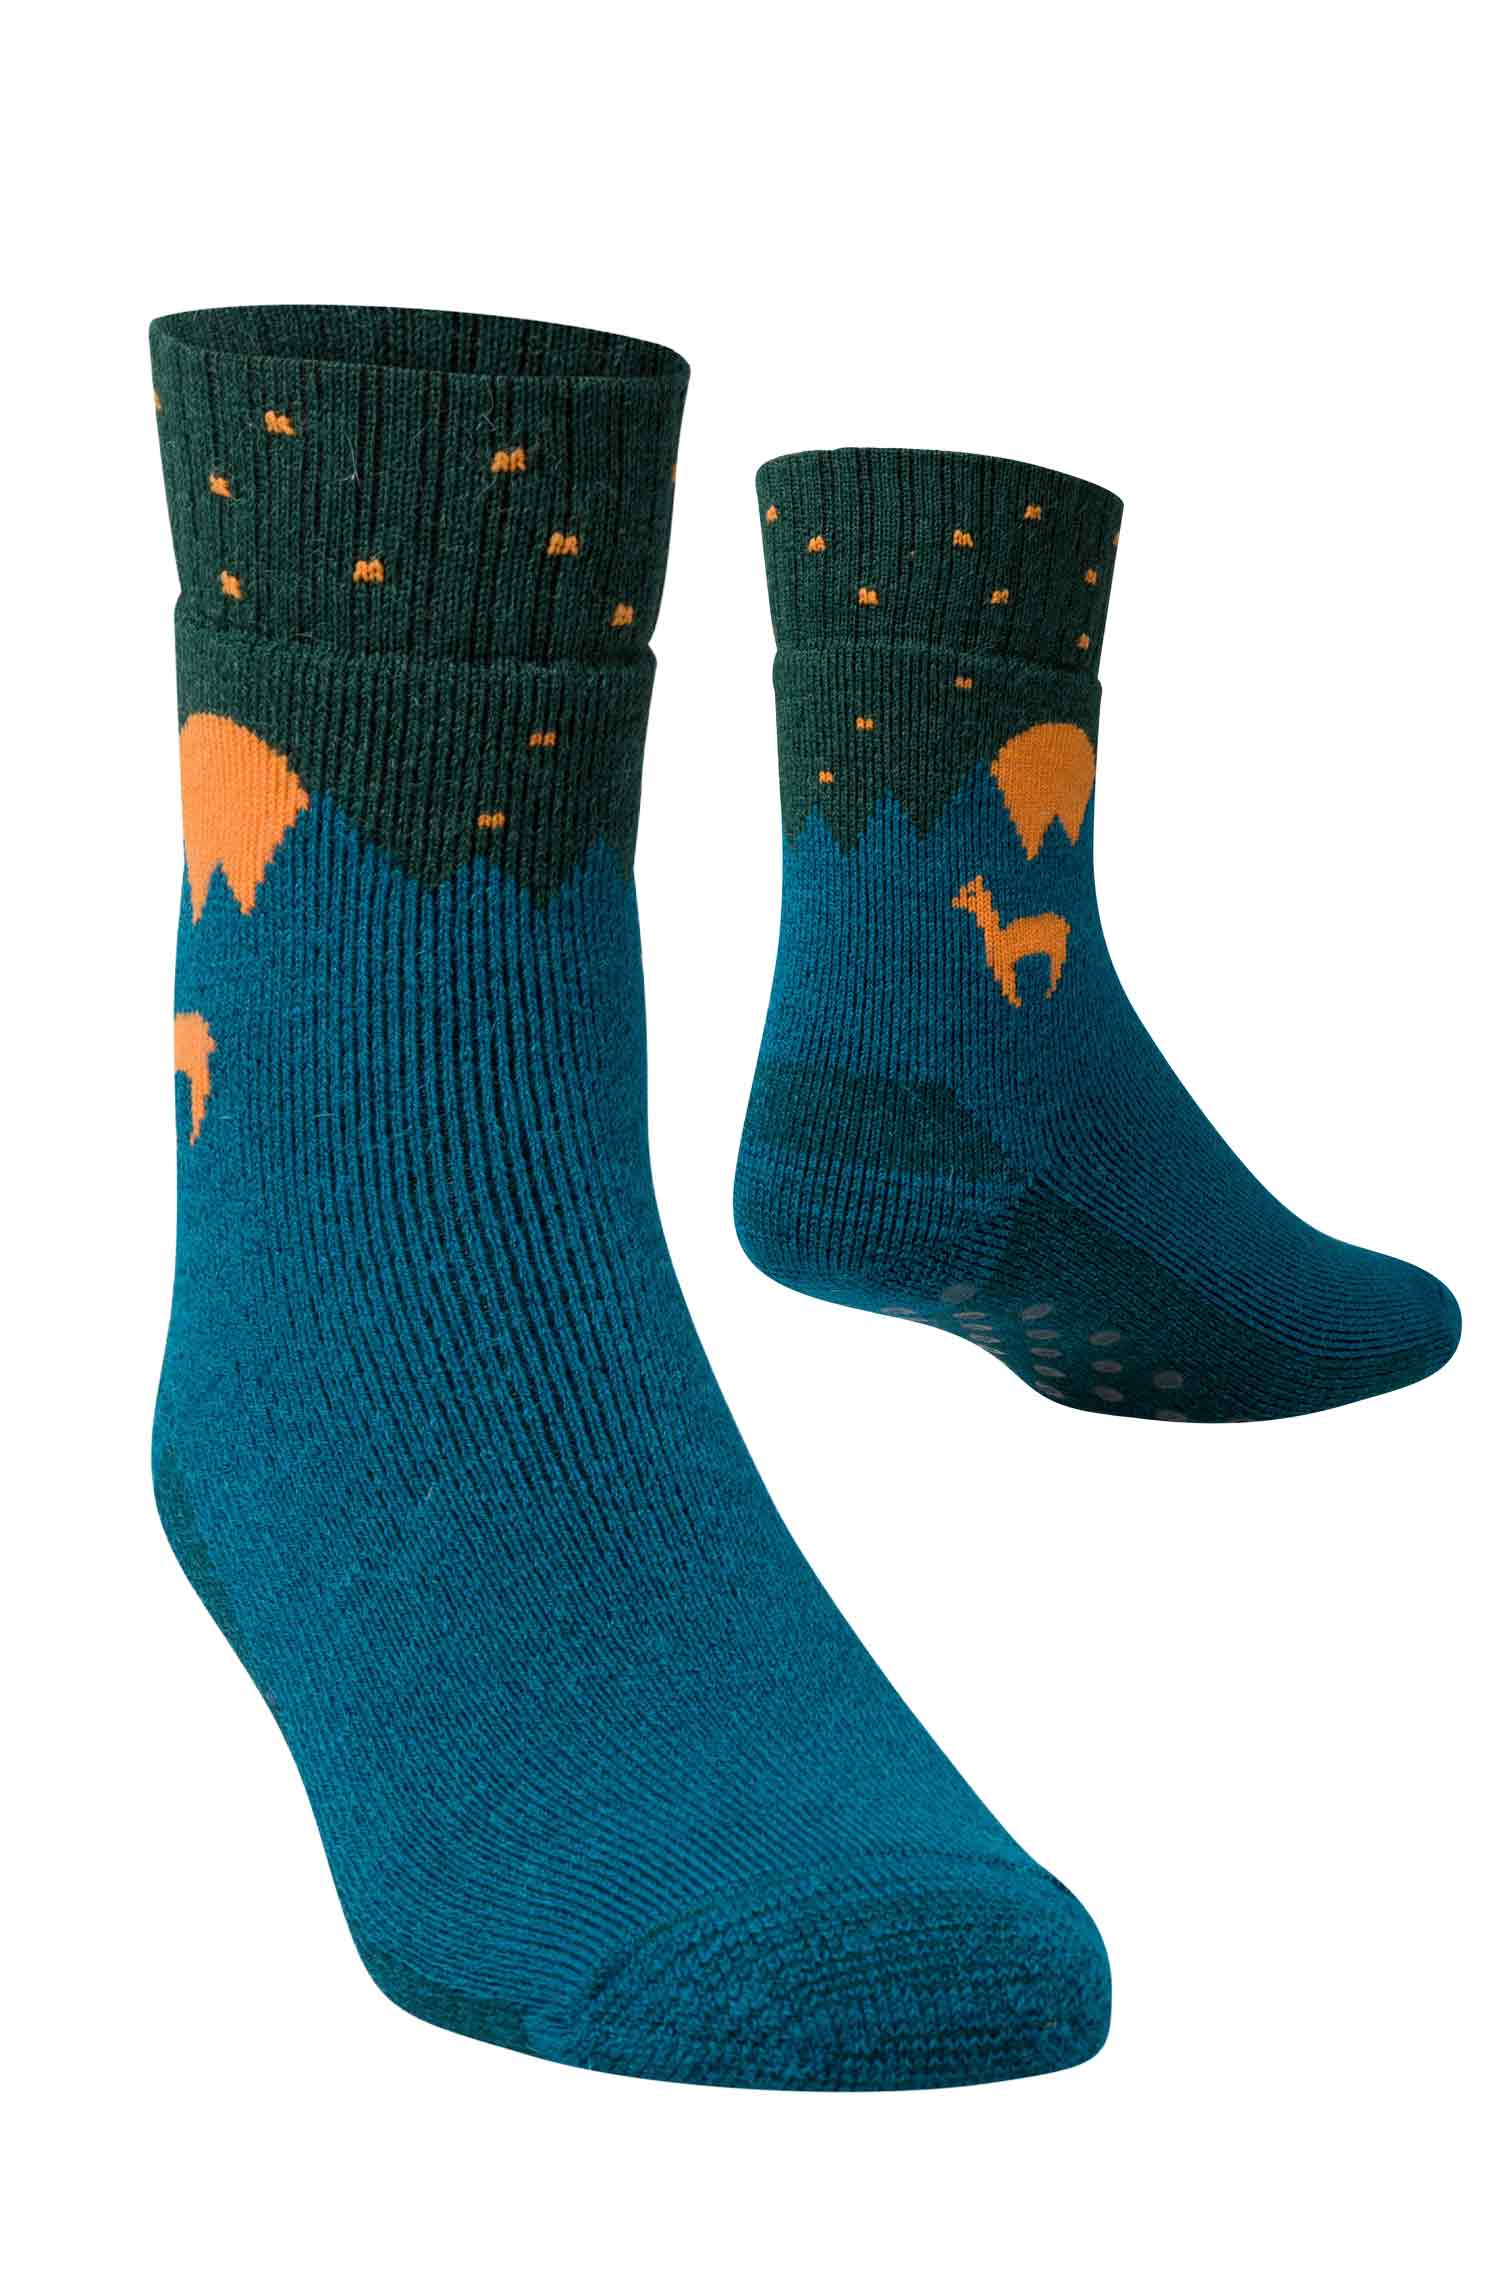 Alpaka ABS-Socken mit 52% Alpaka & 35% Wolle